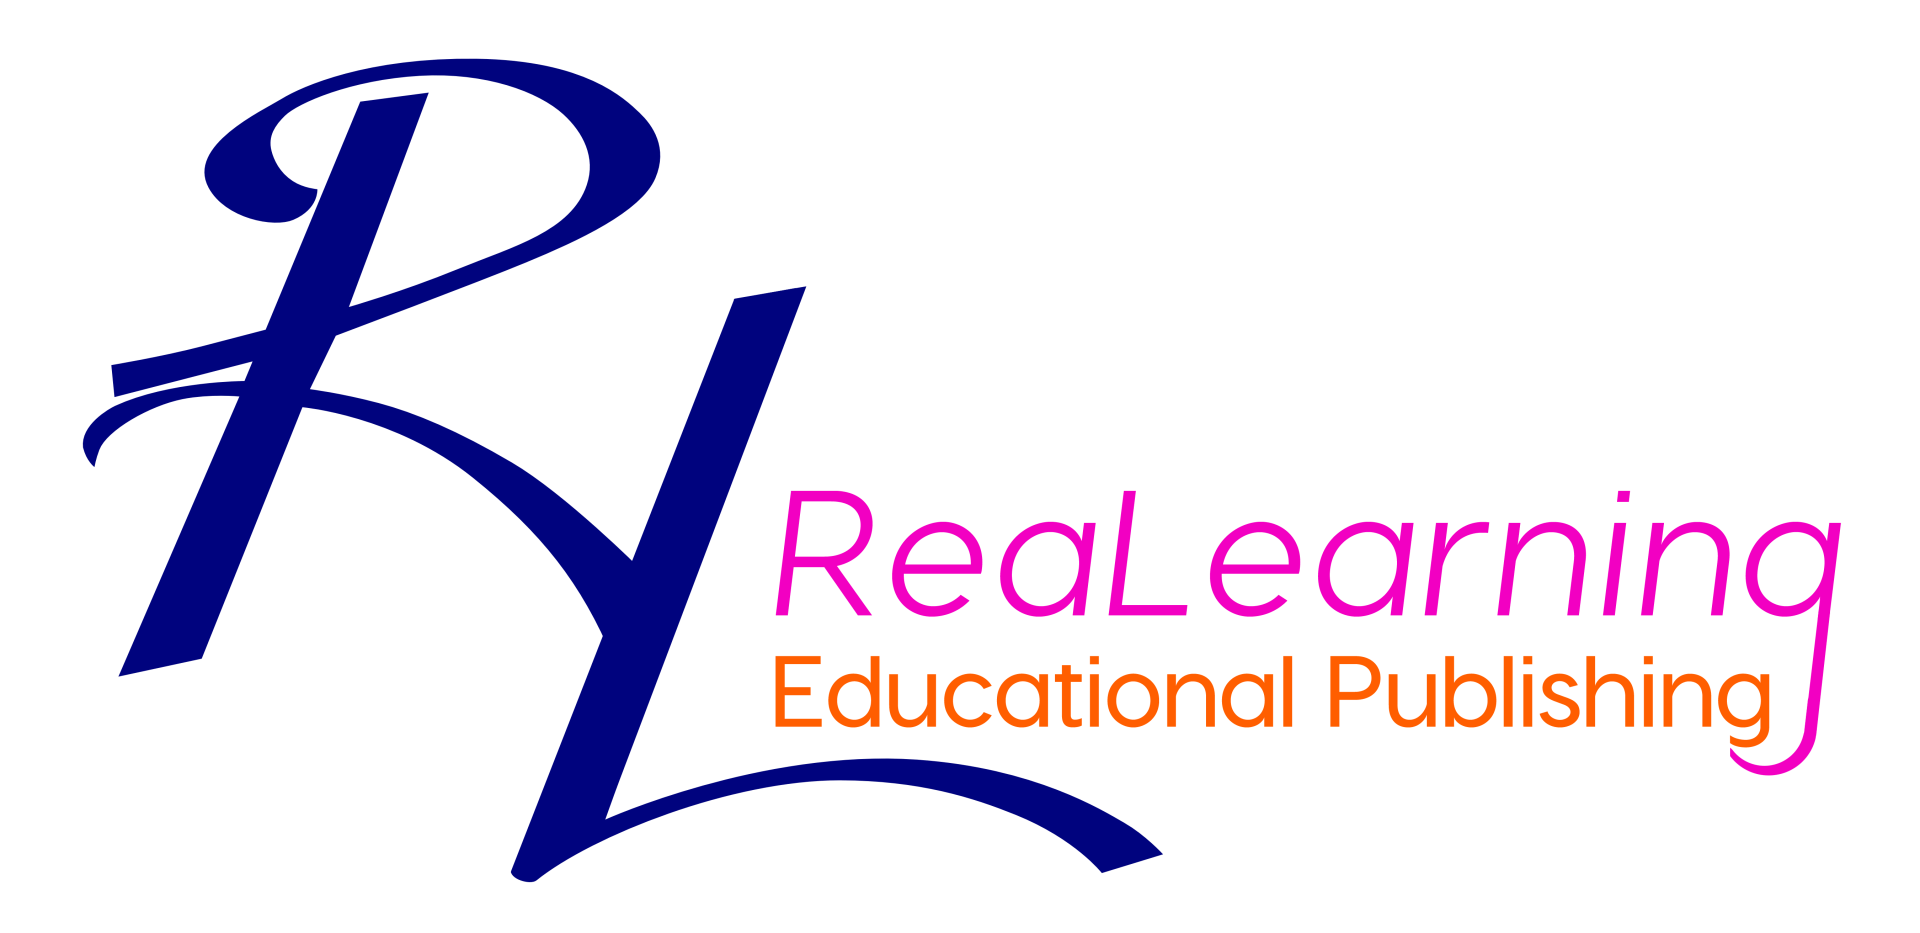 Logo - RL - ReaLearning - Educational Publishing